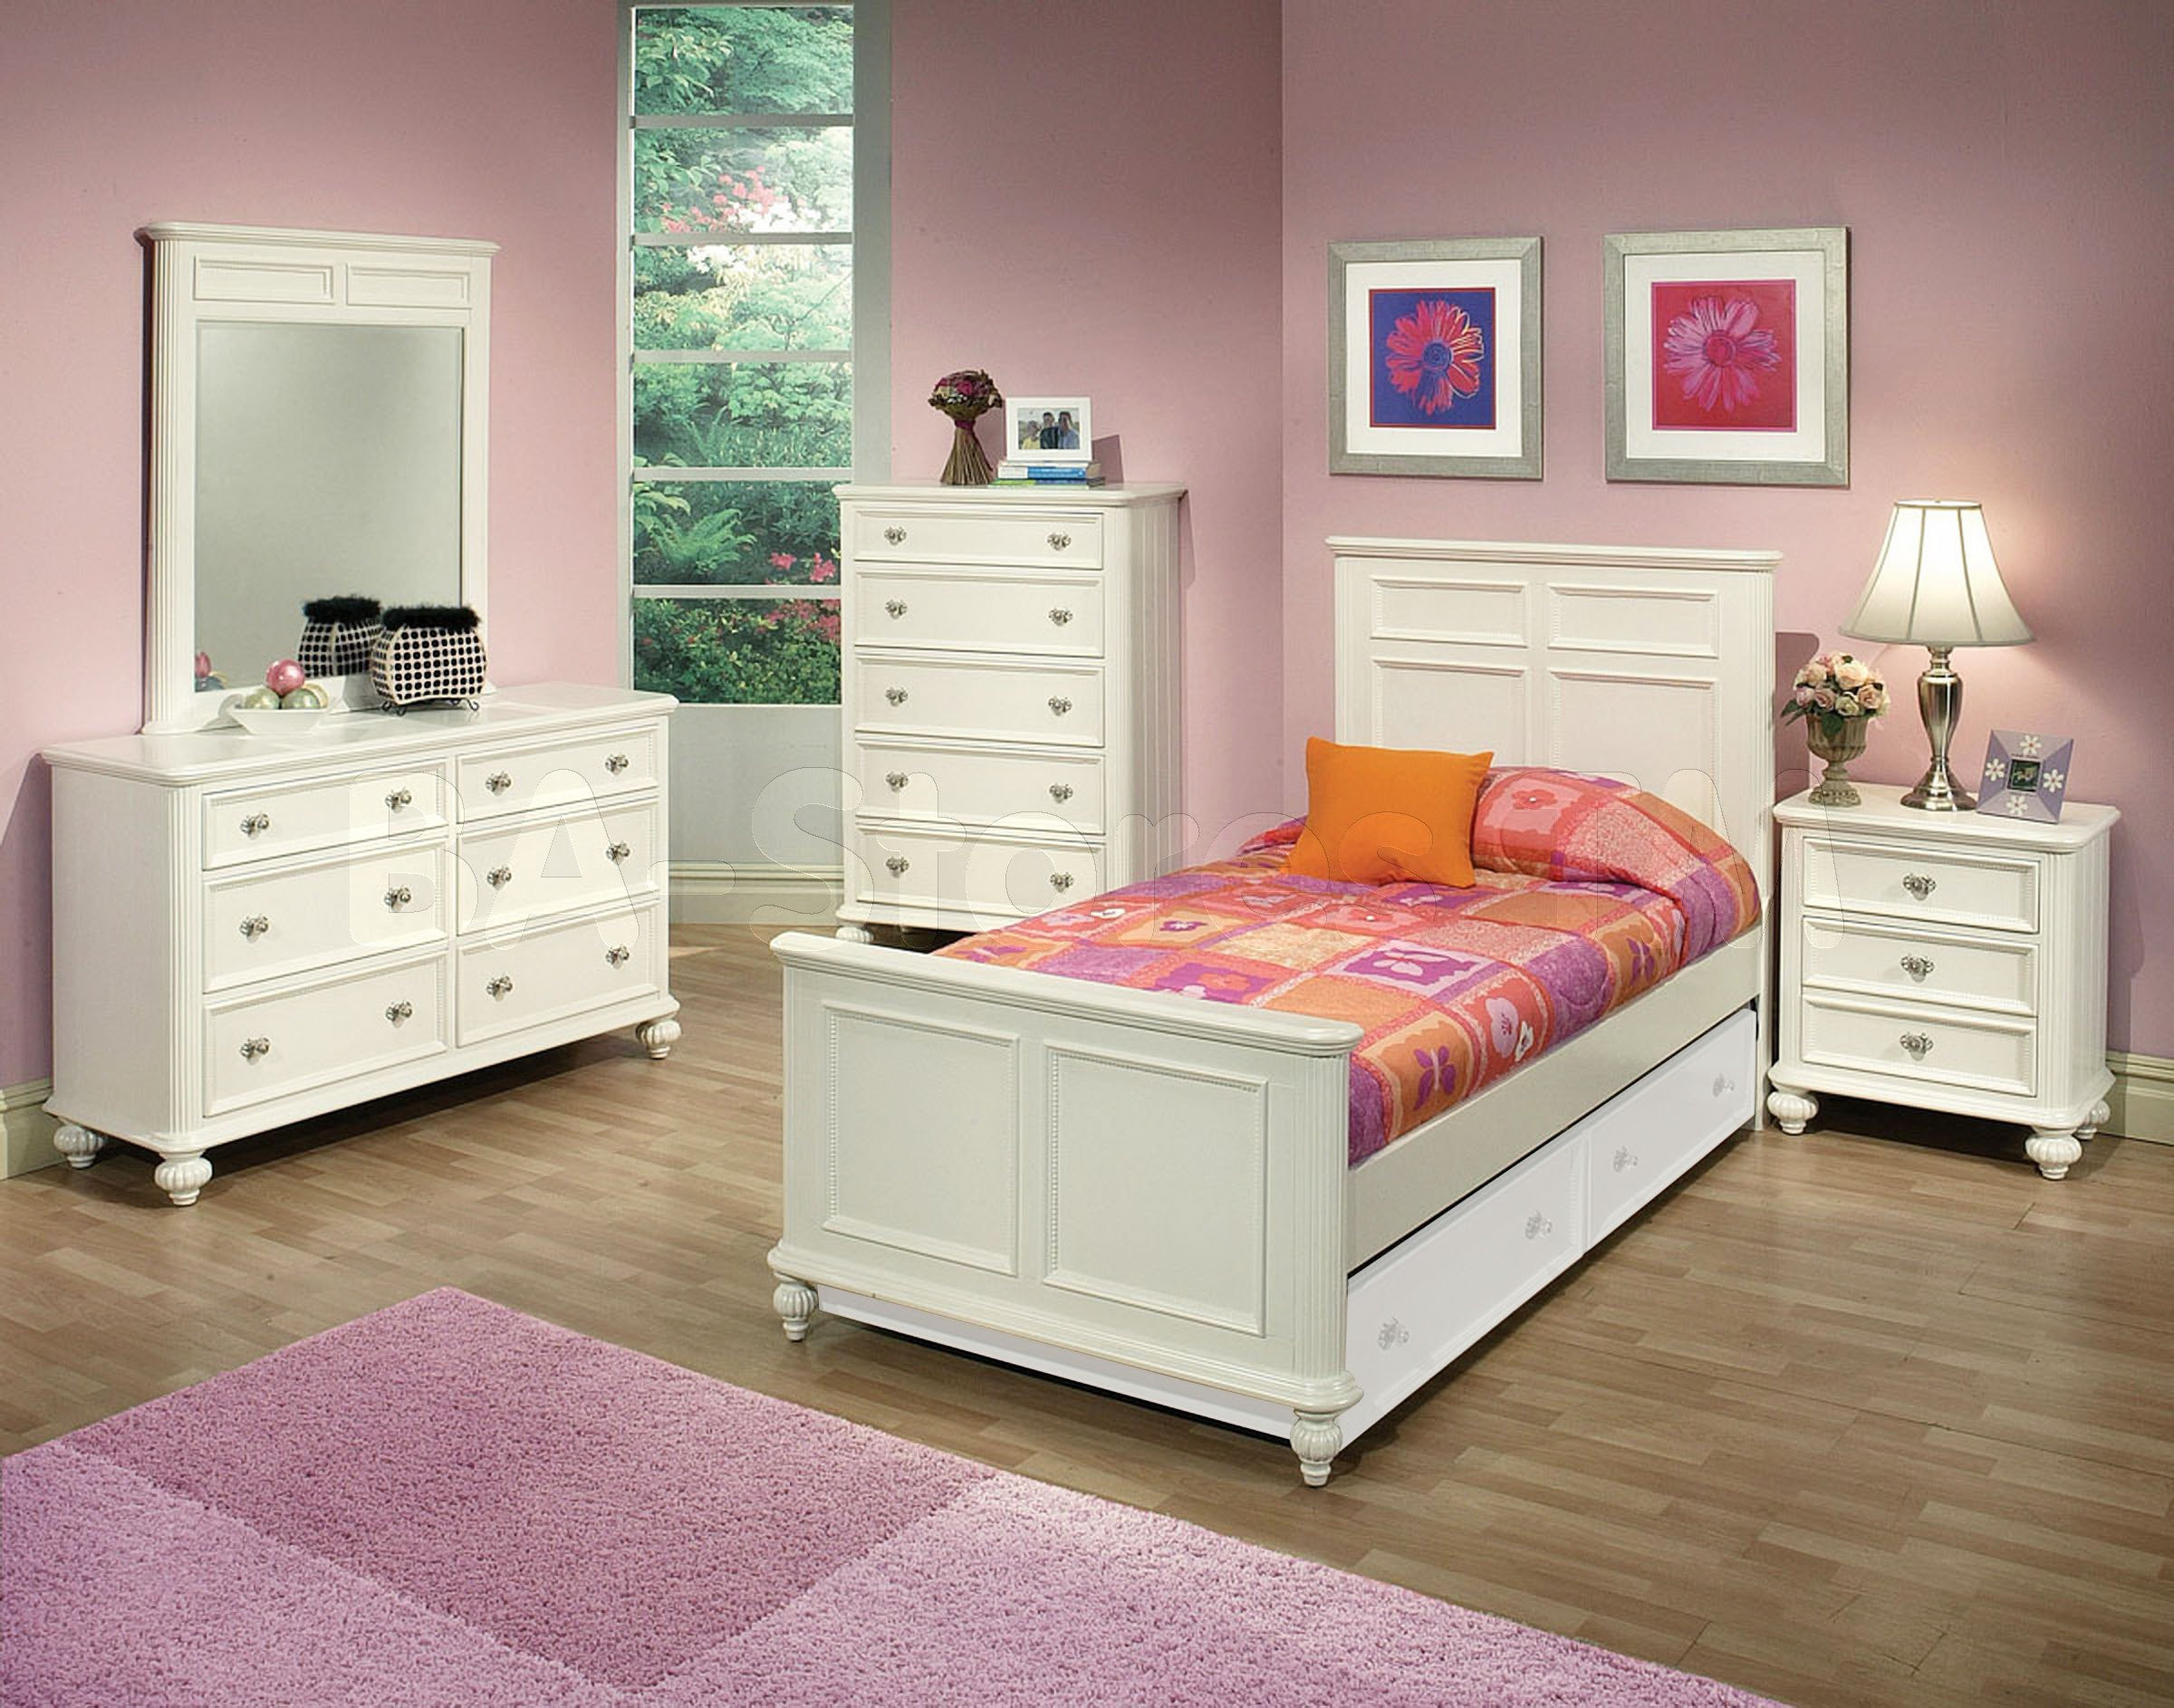 Girl Bedroom Furniture
 Solid wood bedroom furniture for kids 20 tips for best